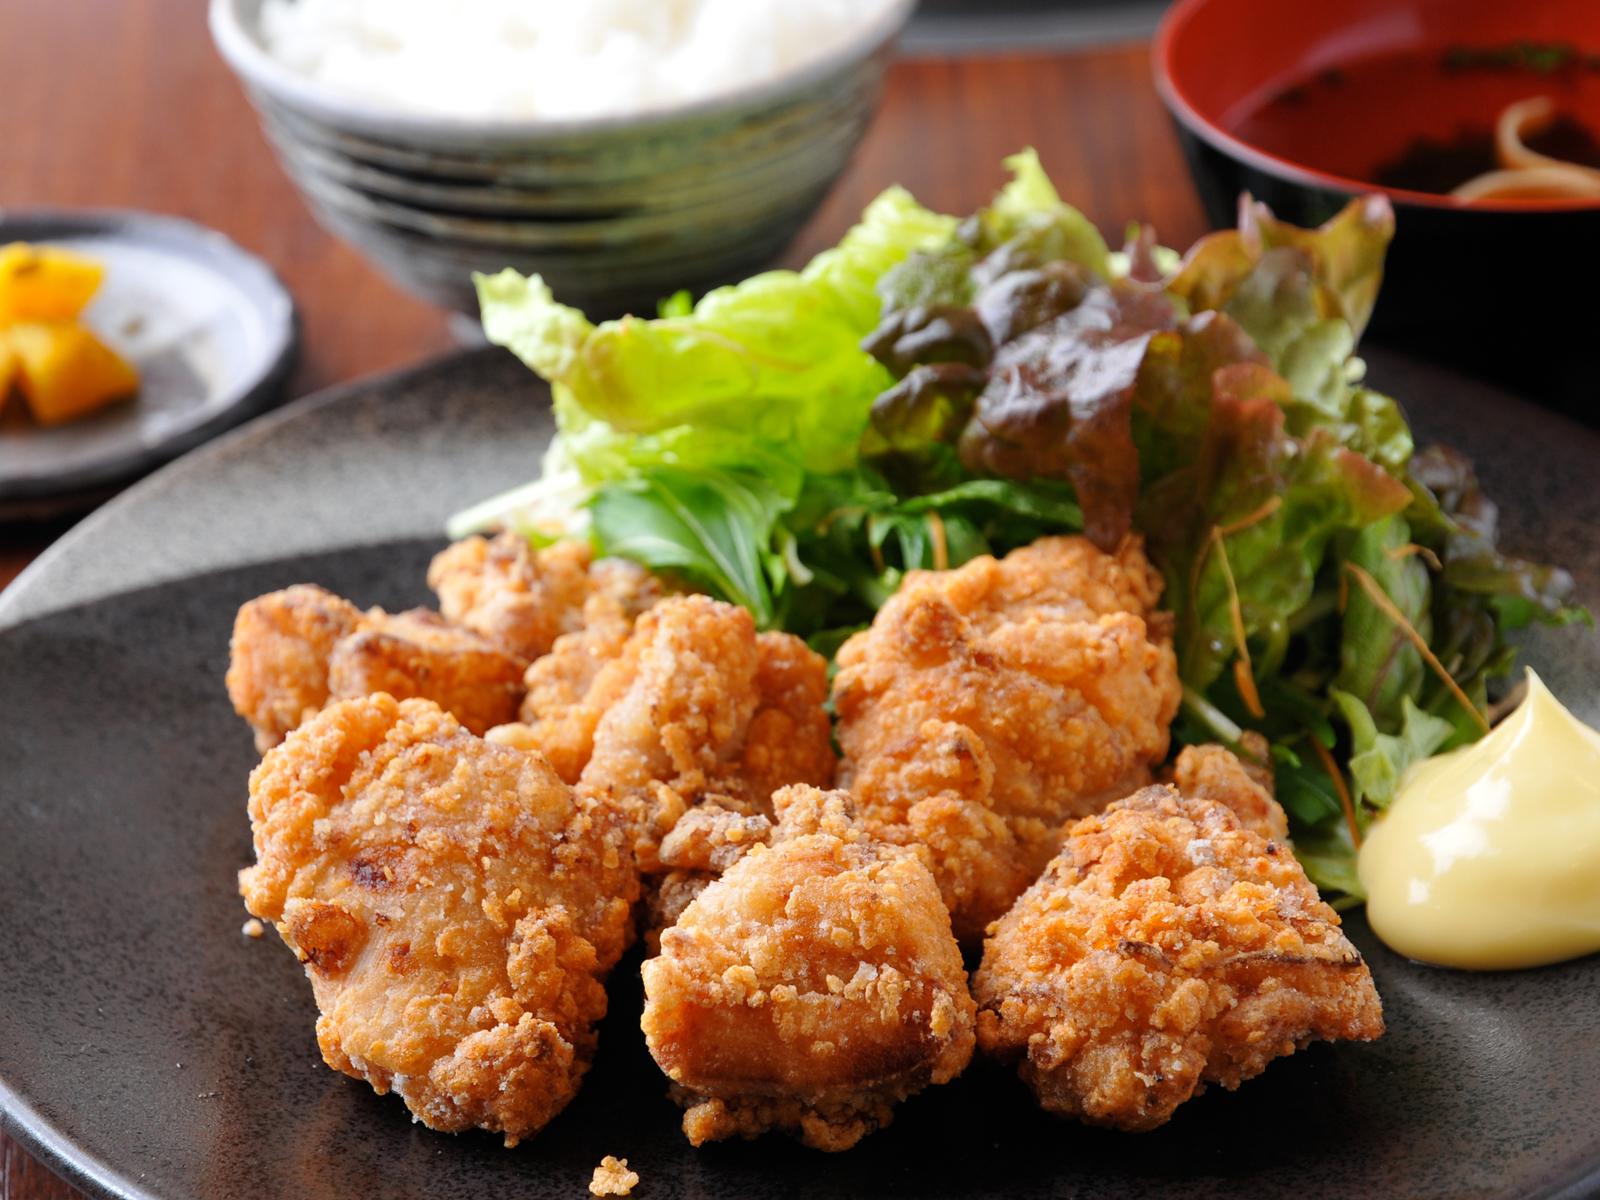 토종닭・닭 요리 미야마혼포 덴몬칸점-1